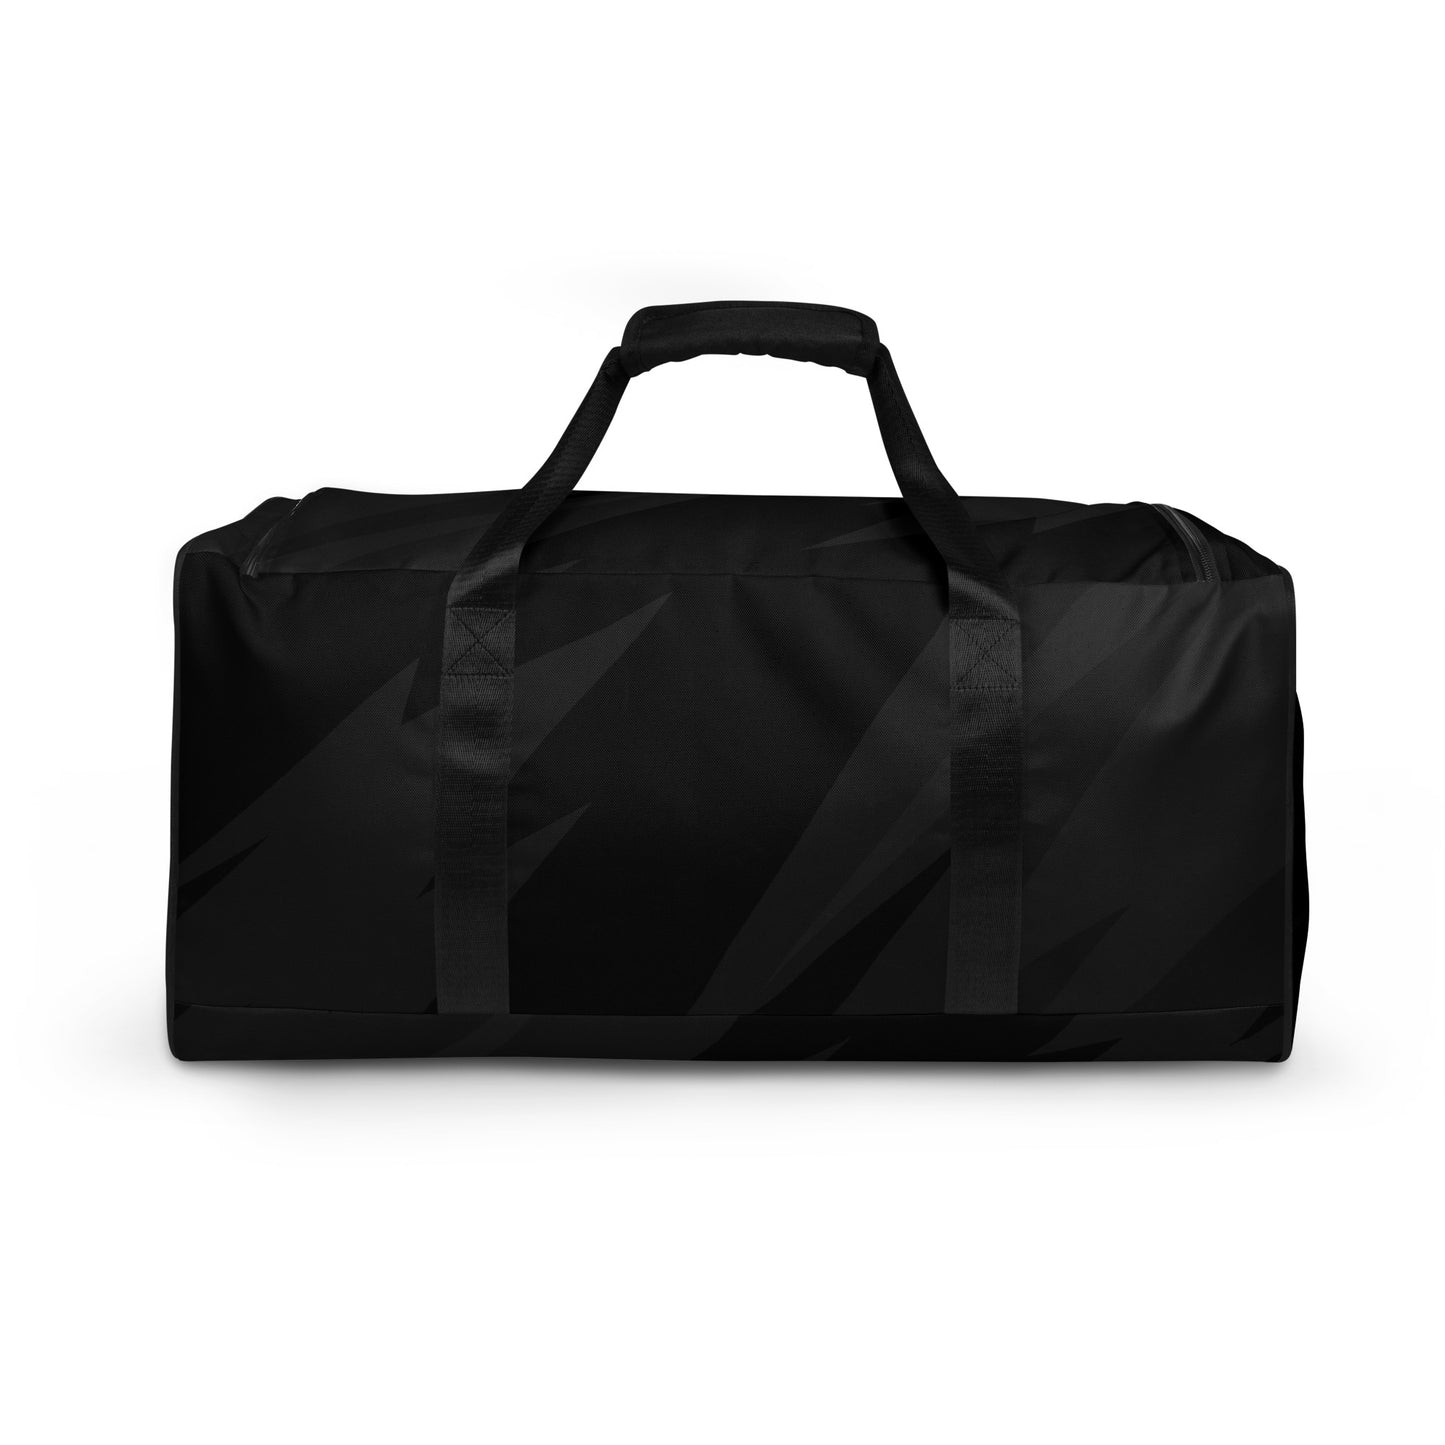 UNFORSAKEN 055 “Never Abandoned” Training Duffel Bag